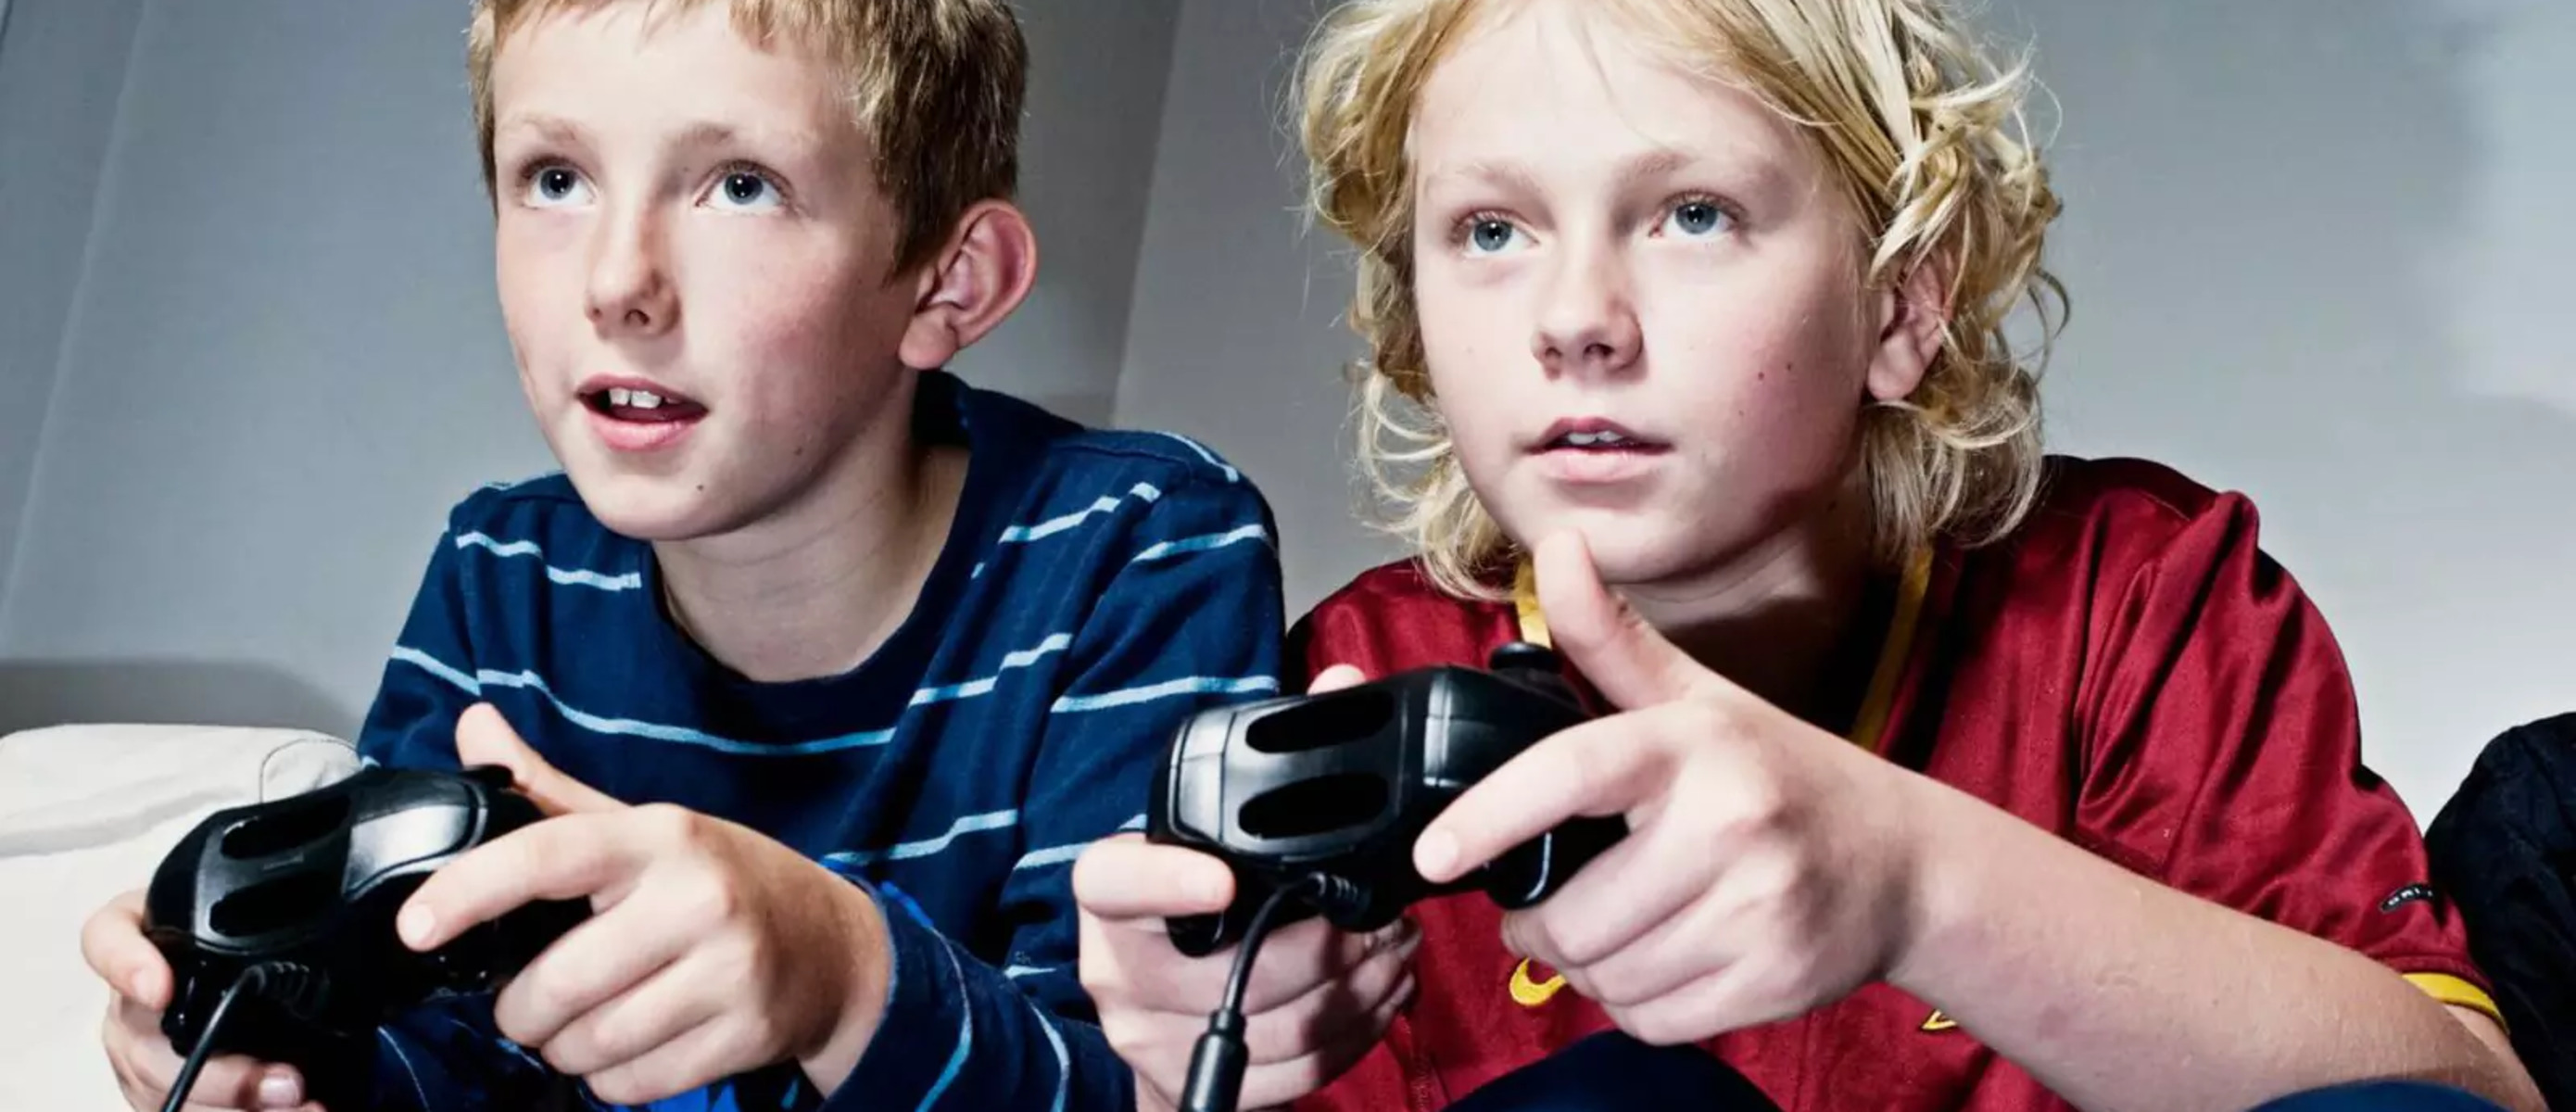 Игры подростков видео. Дети играющие в компьютерные игры. Подростки играющие в компьютерные игры. Ребенок играющий в компьютерную игру. Увлечения подростков.